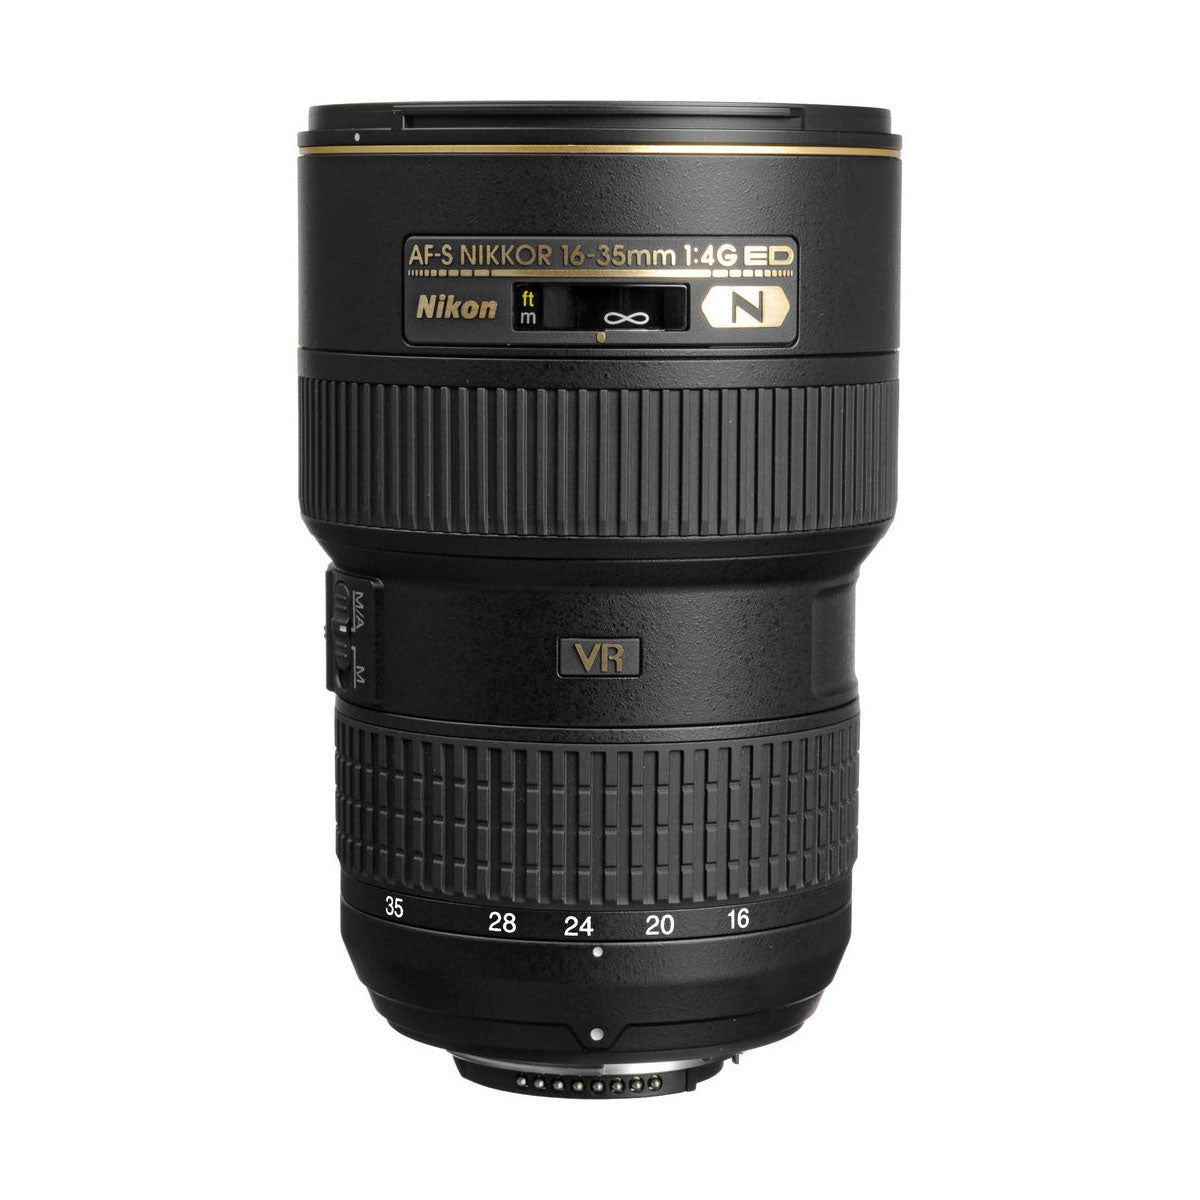 Nikon 16-35mm f/4G ED AF-S NIKKOR VR Lens